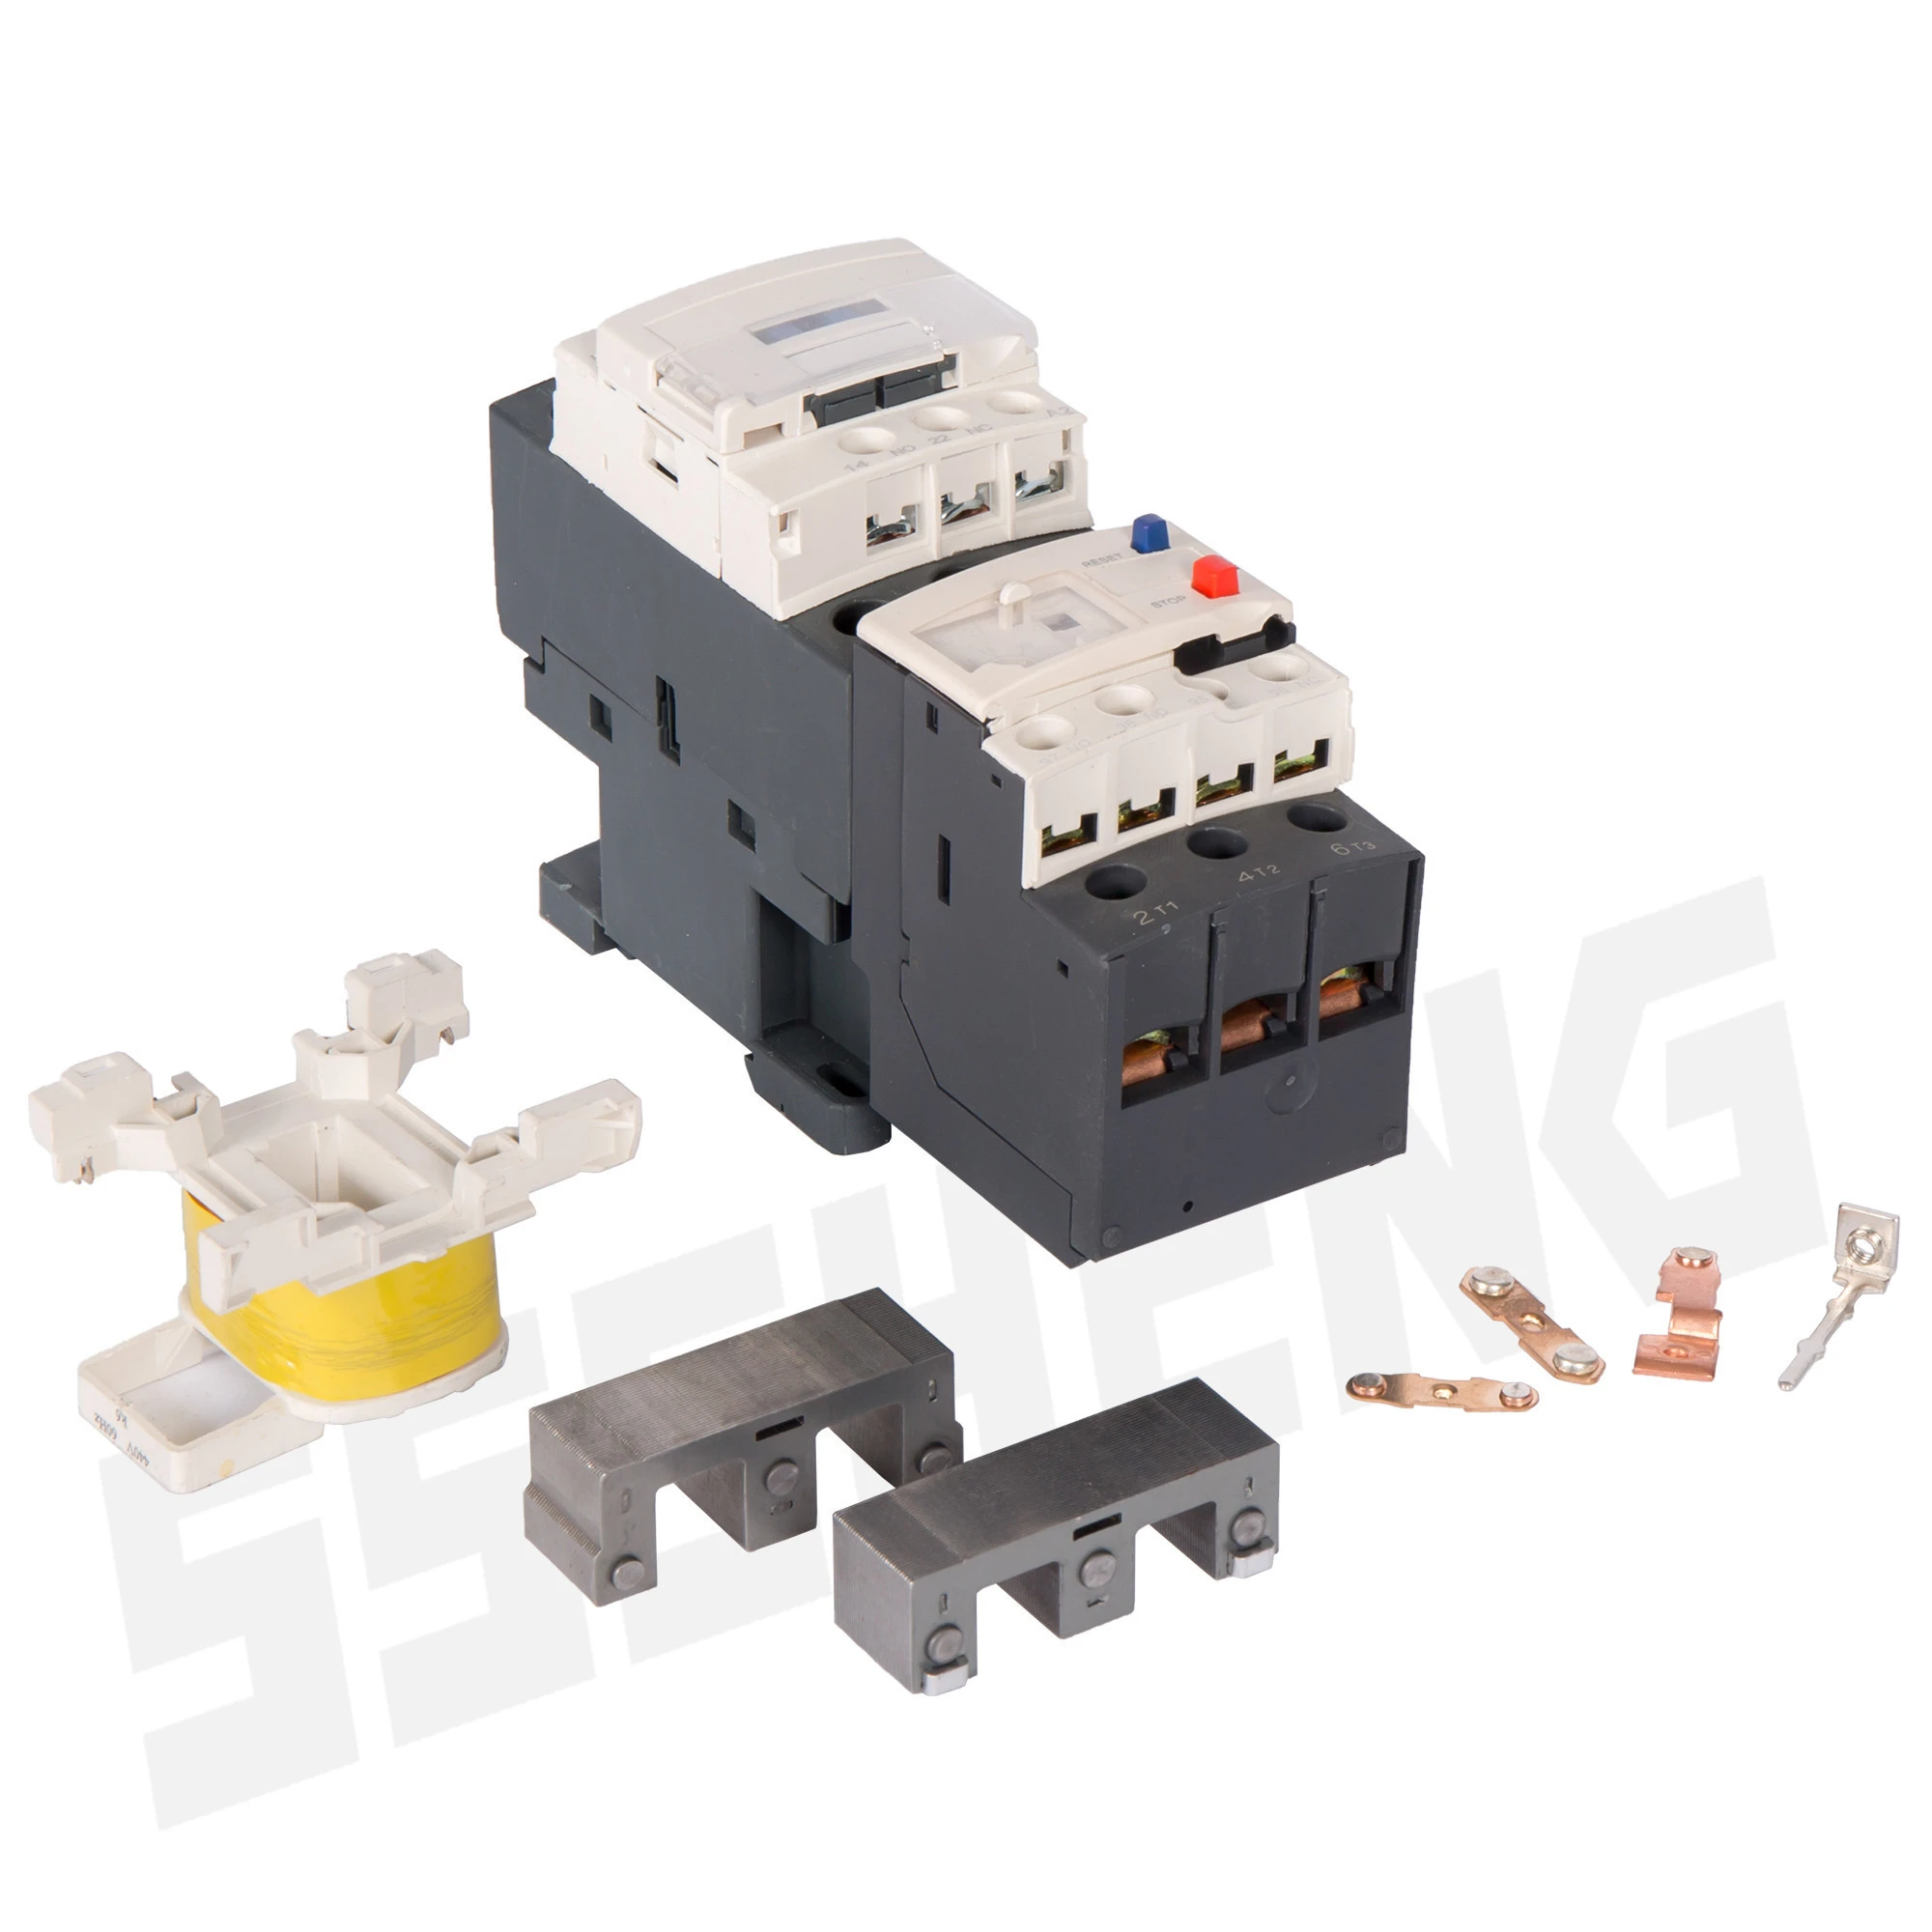 IEC Standard CJX2-1210 AC Contactor and Relay 110V 220V Coil Magnetic Contactors Relays